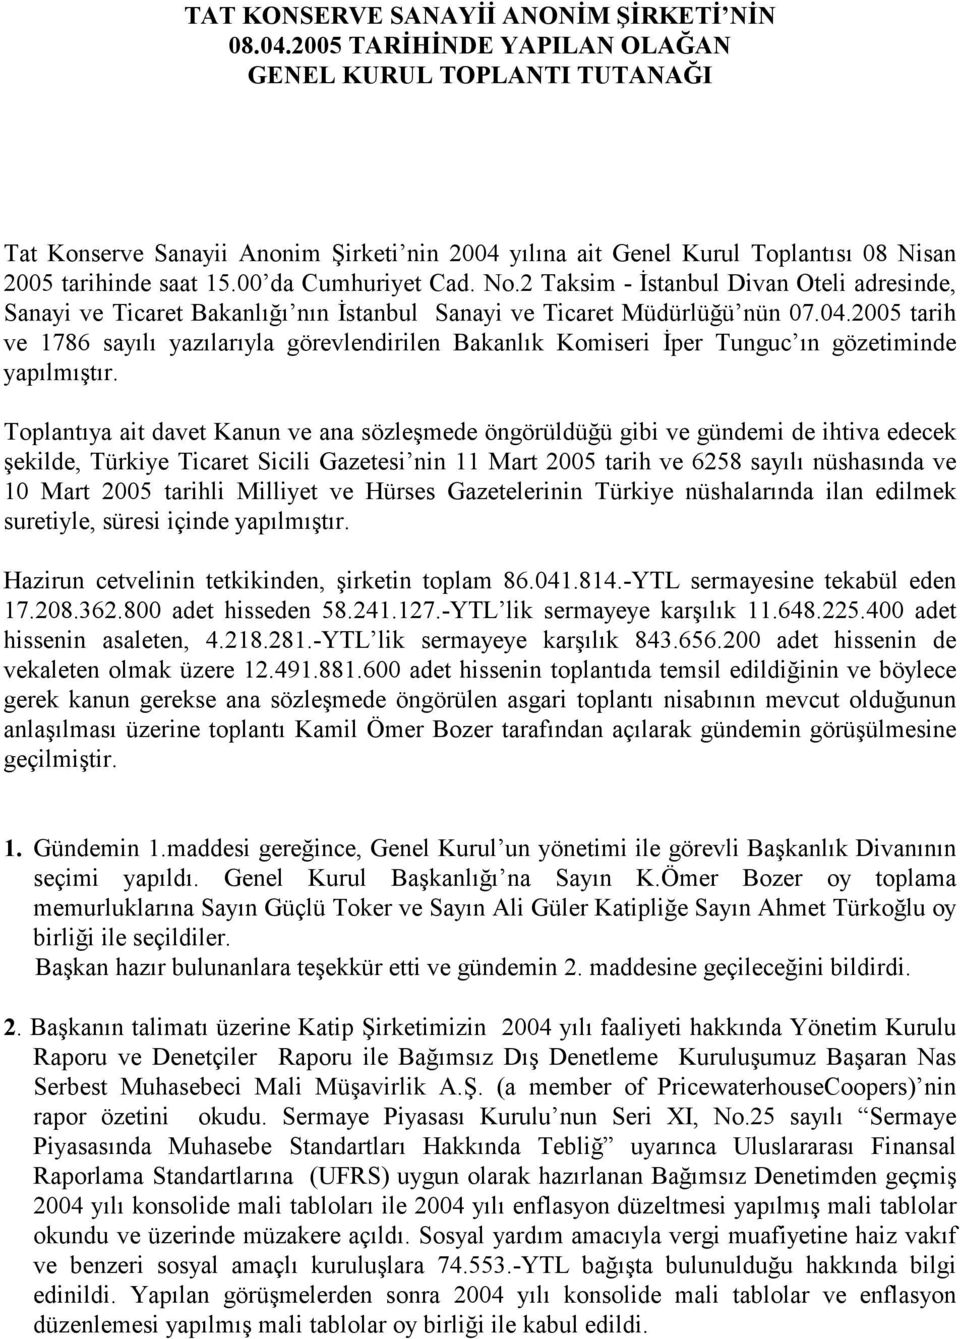 2 Taksim - Đstanbul Divan Oteli adresinde, Sanayi ve Ticaret Bakanlığı nın Đstanbul Sanayi ve Ticaret Müdürlüğü nün 07.04.